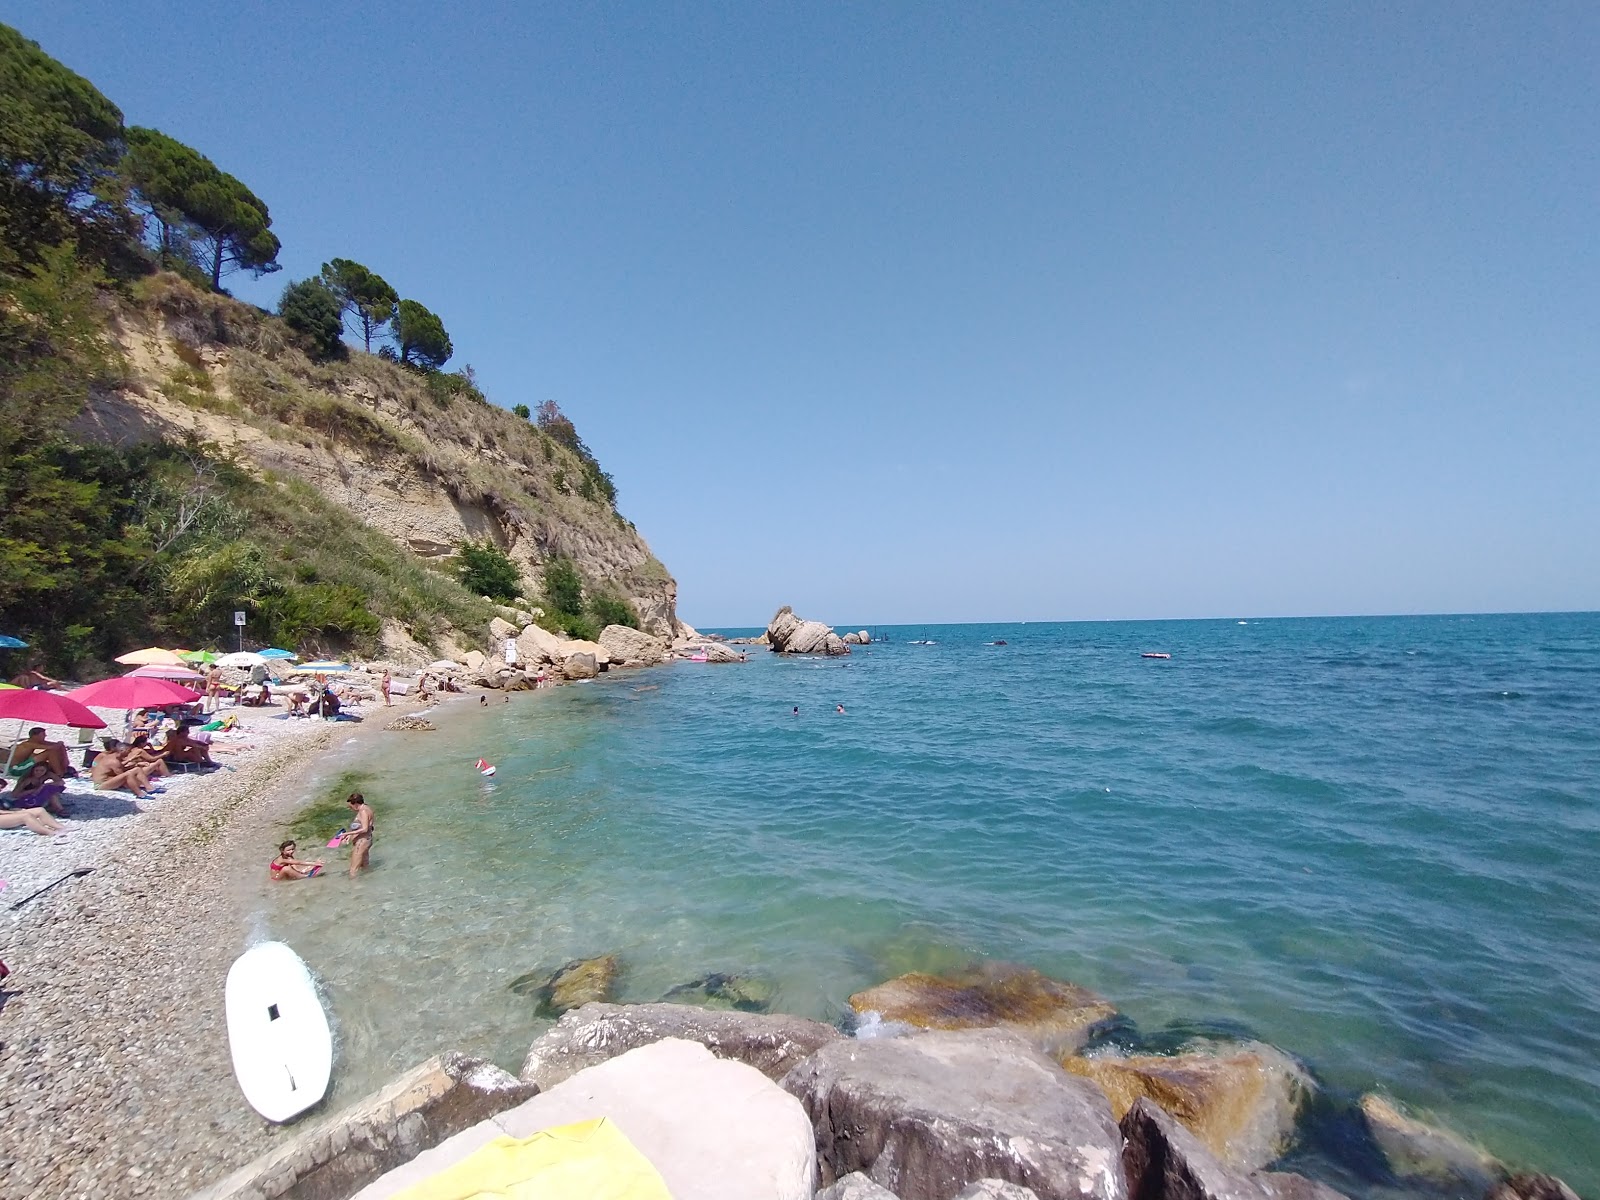 Photo of Spiaggia di Punta Acquabella with gray pebble surface